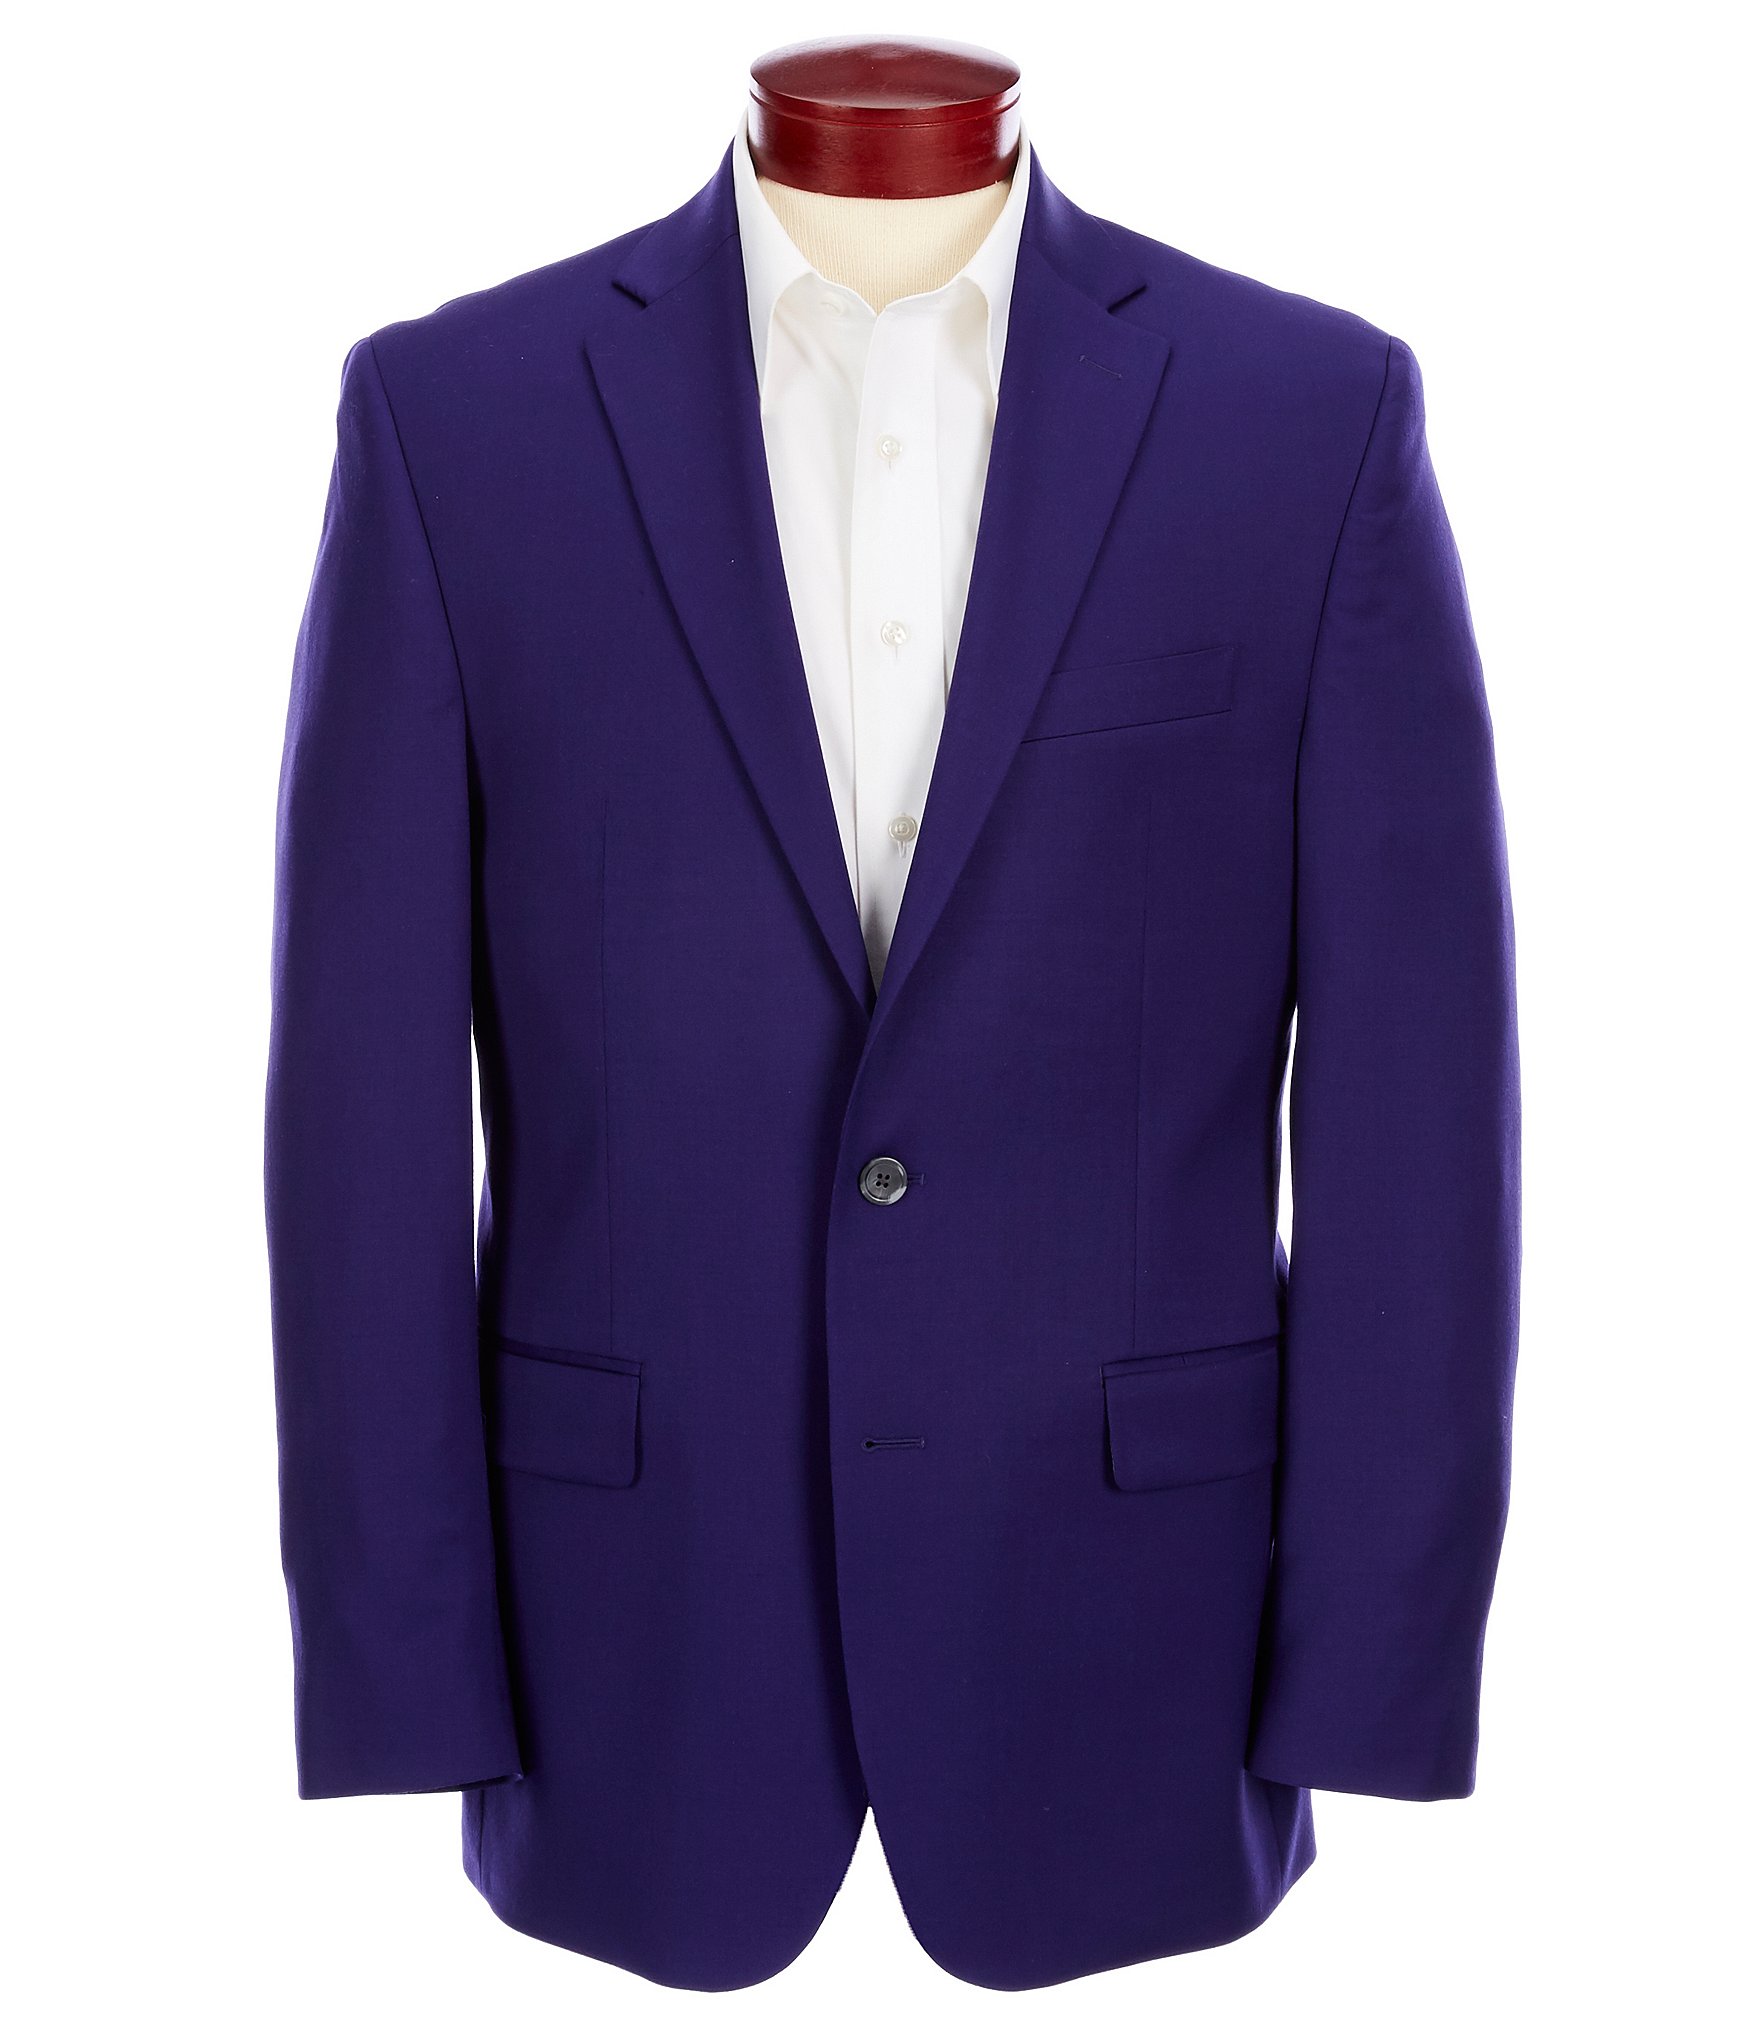 Purple Men's Suits and Suit Separates | Dillard's